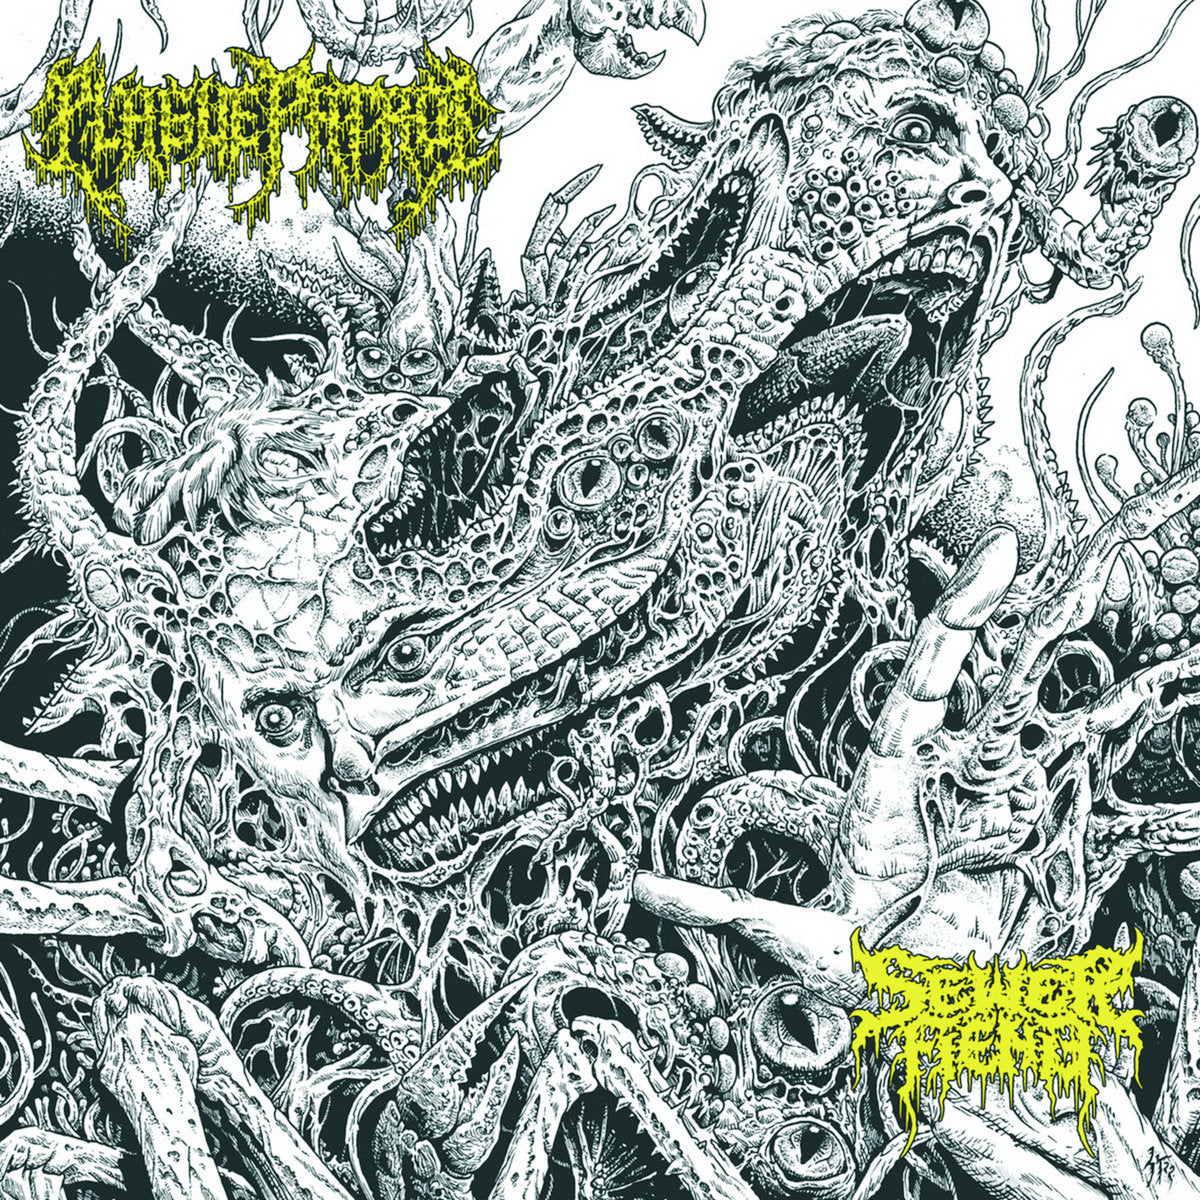 Plague Patrol / Sewer Fiend's Split LP 12" record death metal Lp